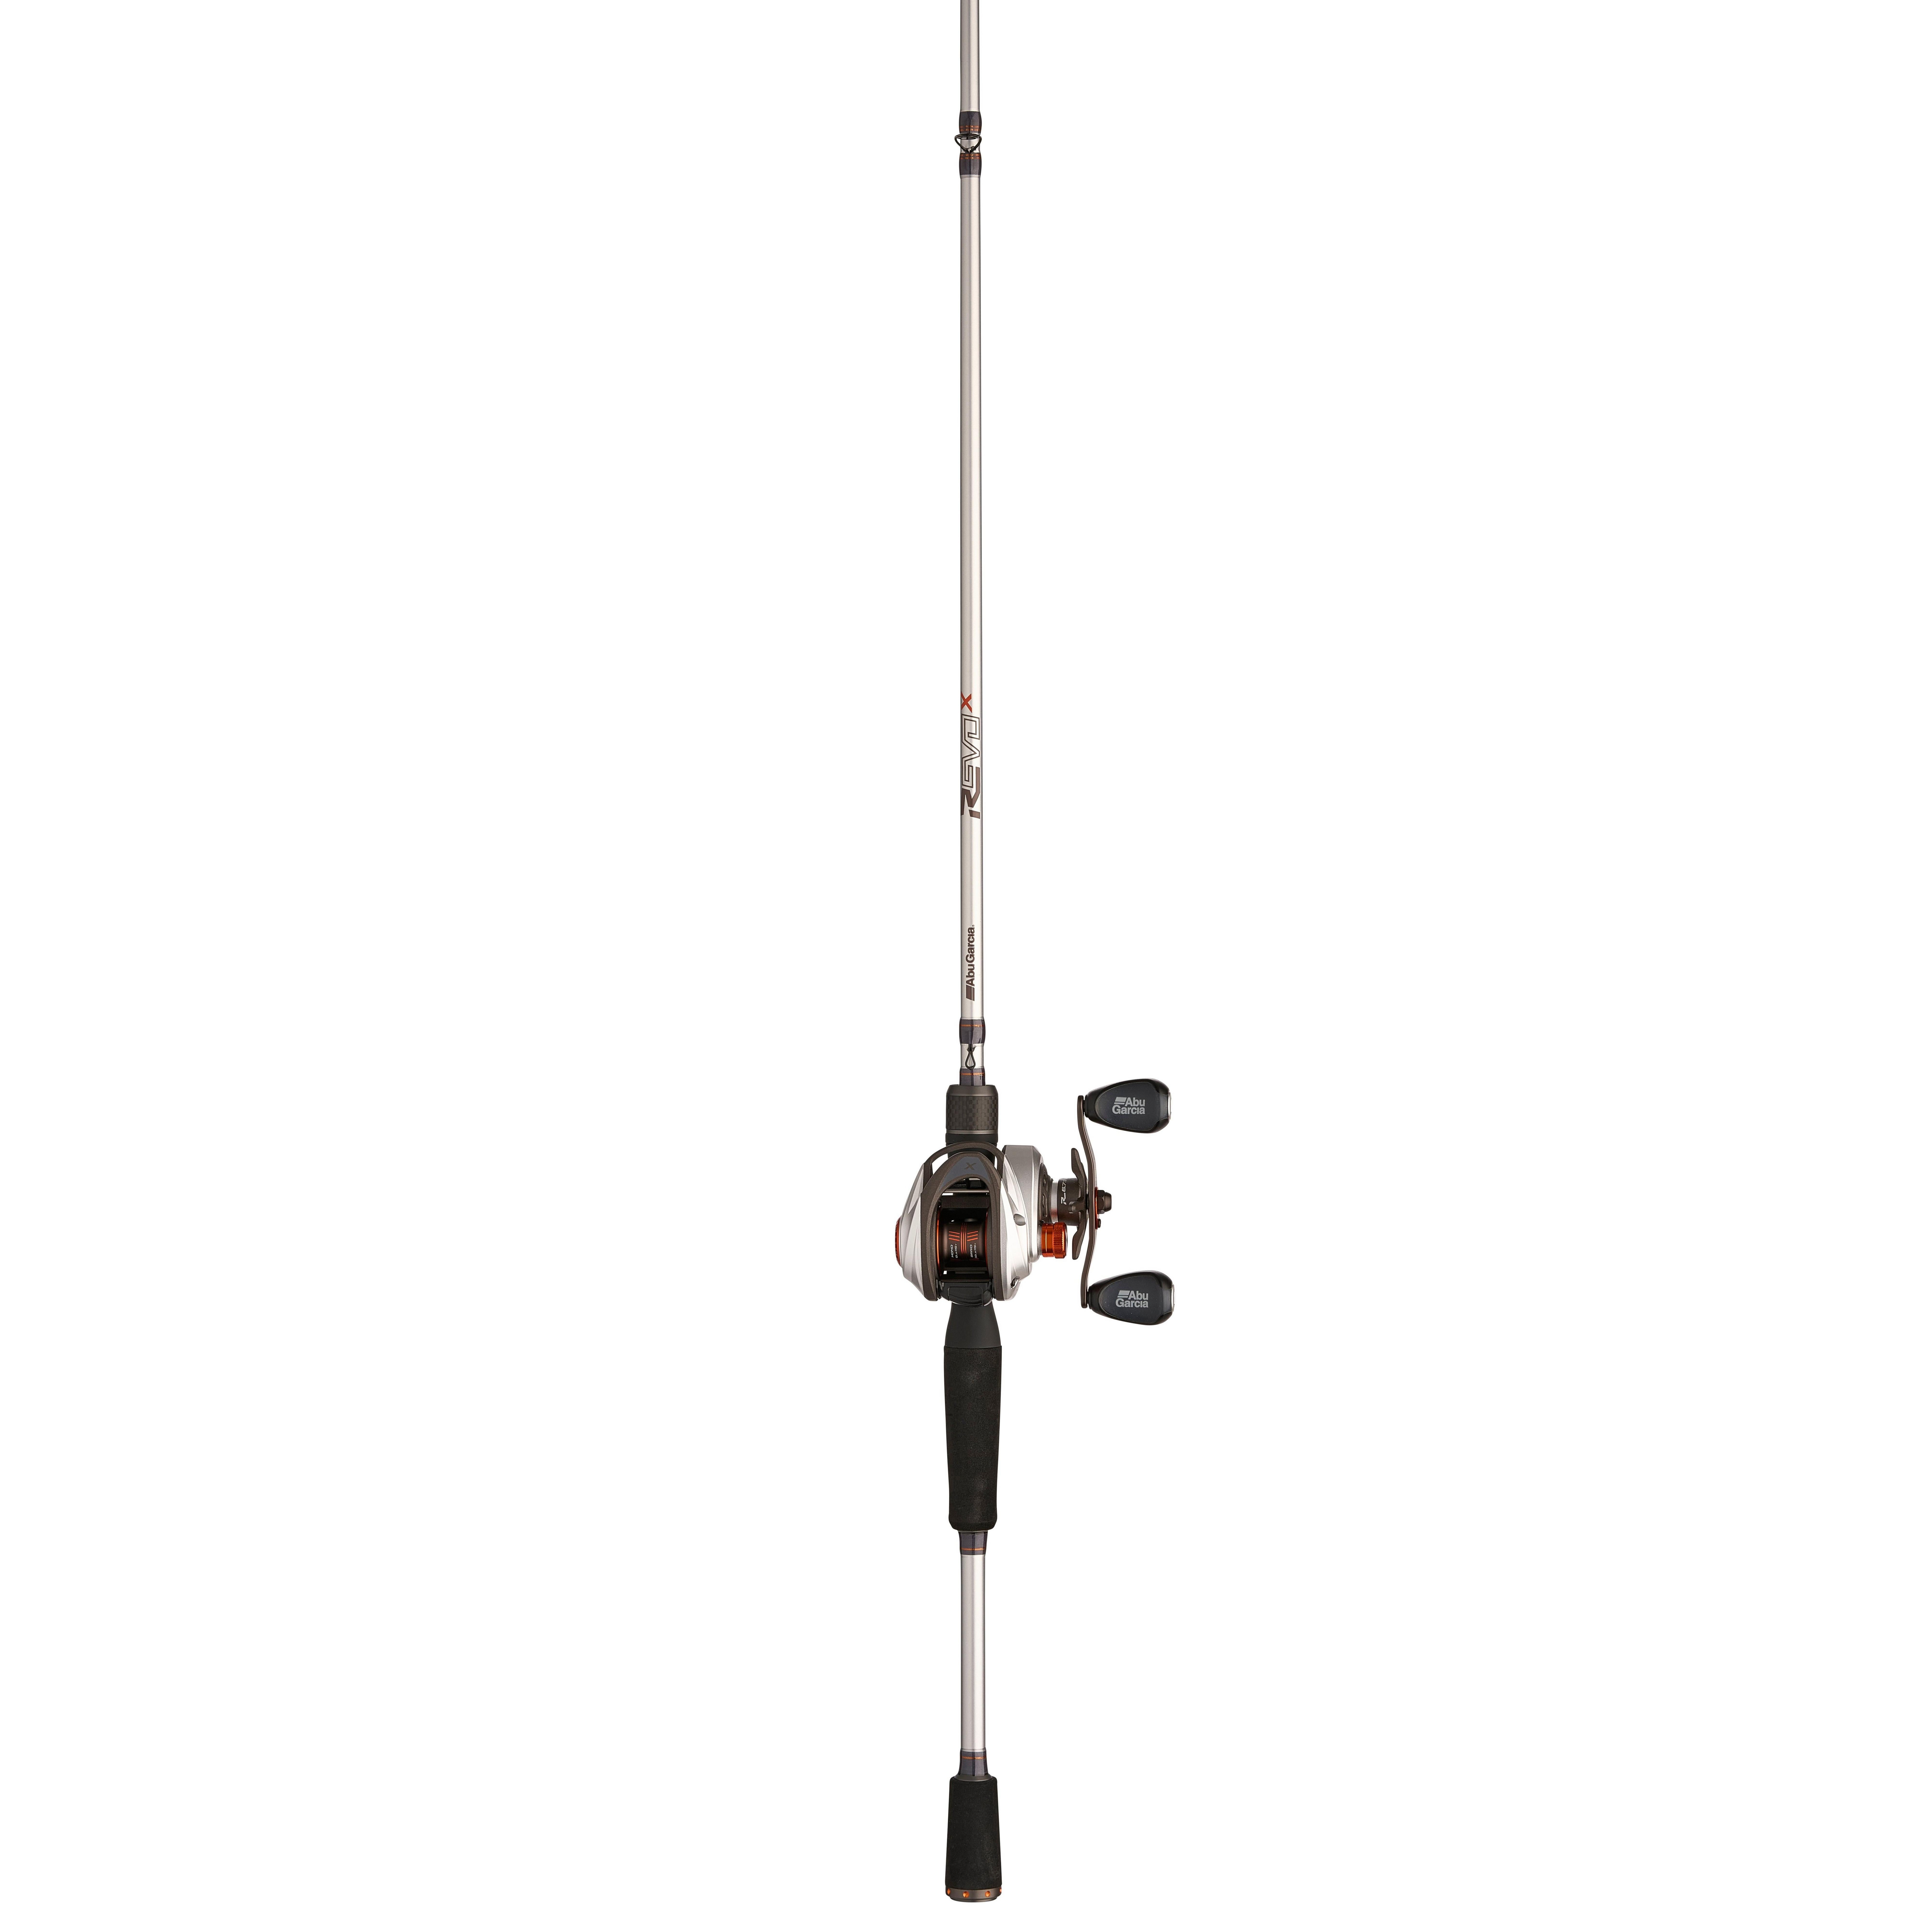 Abu Garcia Revo 5 X 7' Low Profile Fishing Rod and Reel Combo